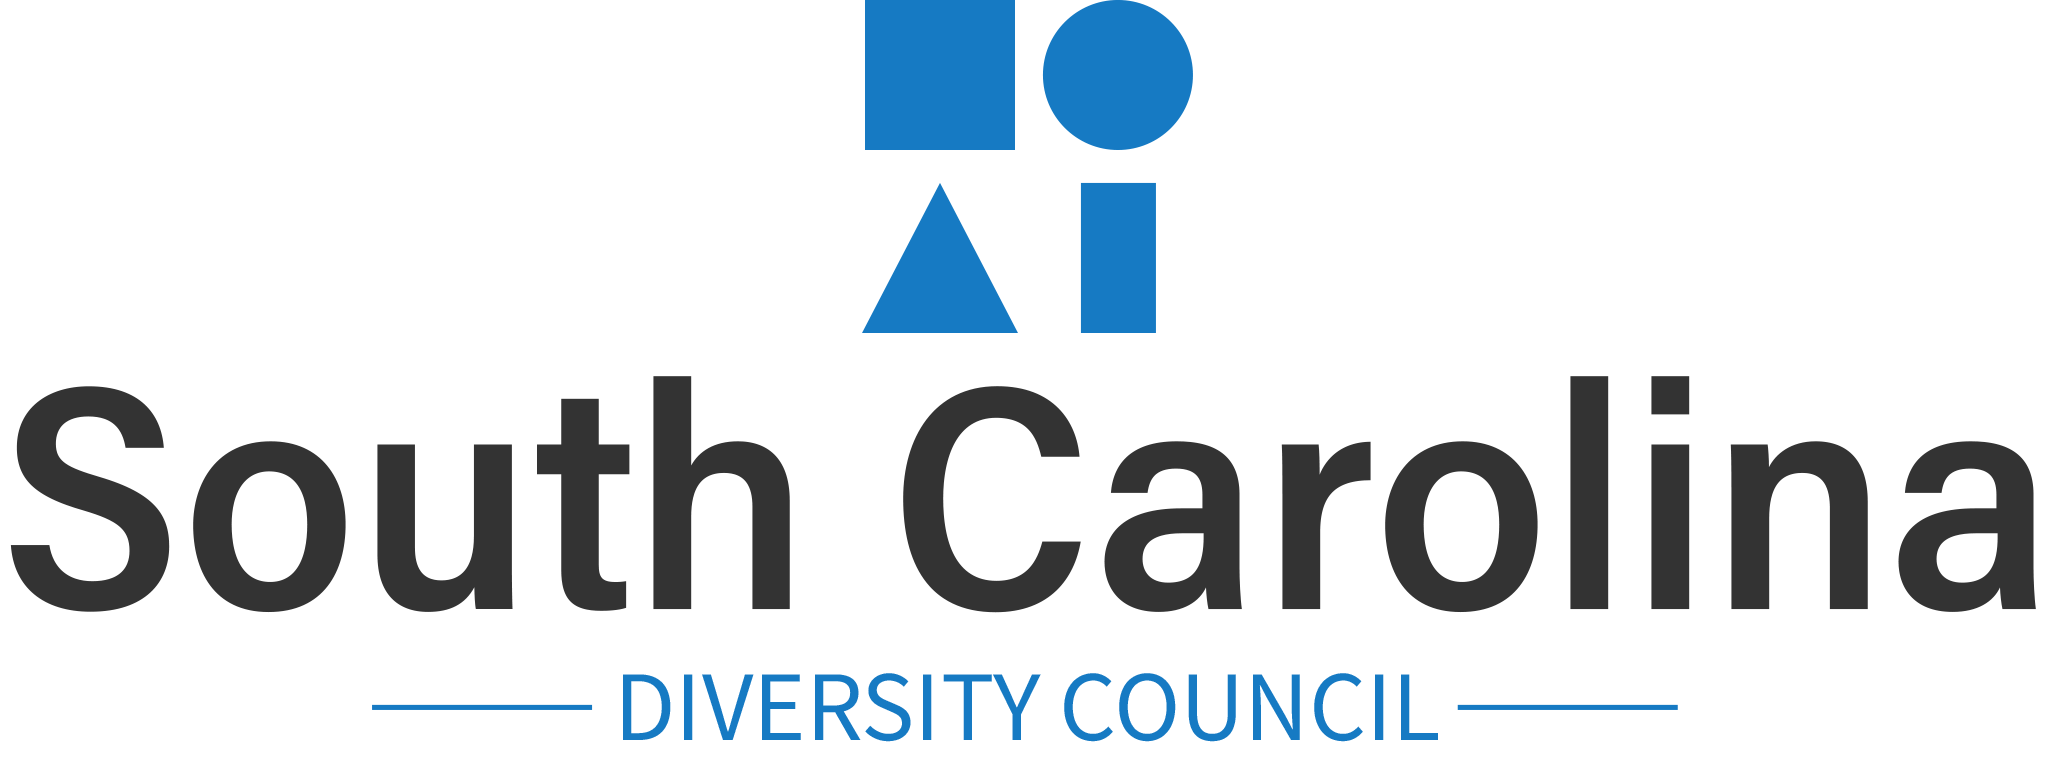 South Carolina Diversity Council